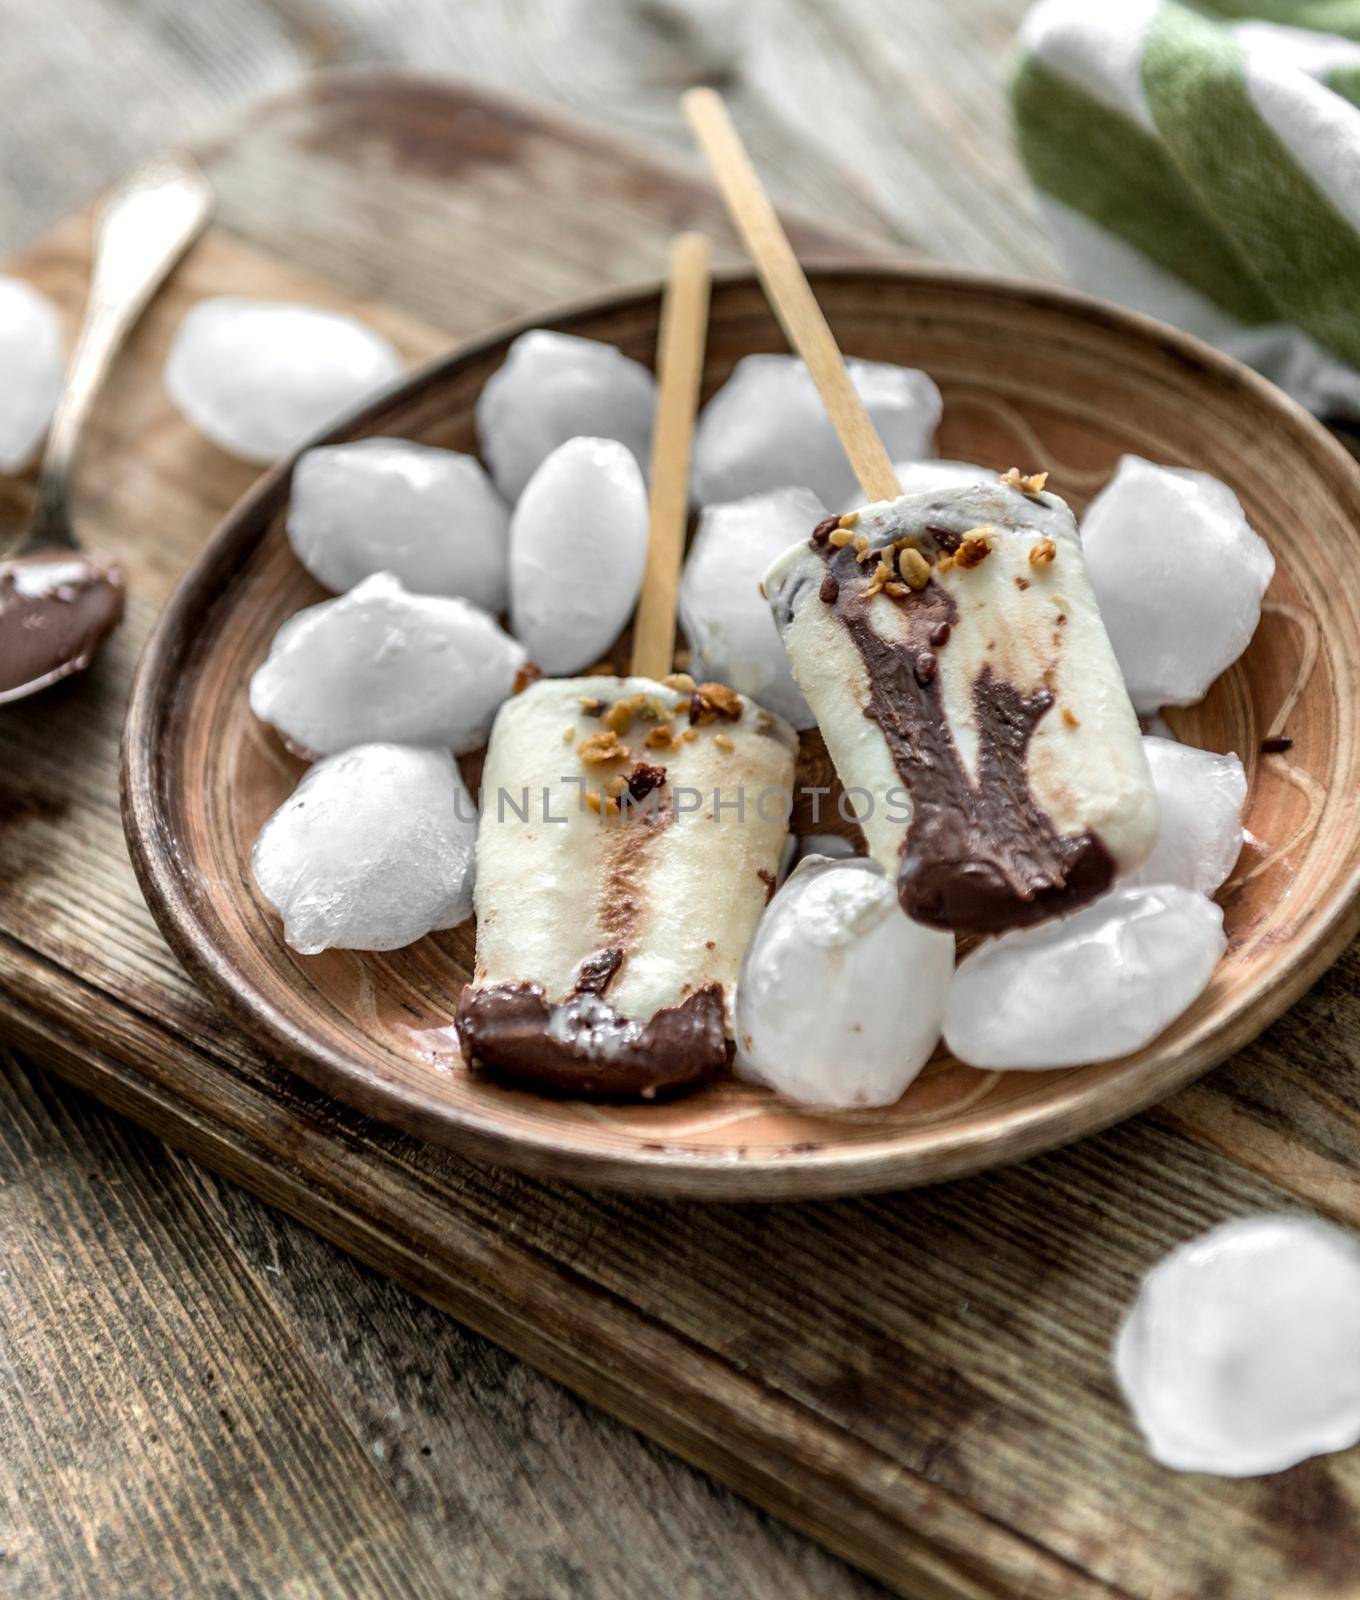 Homemade cream ice cream with chocolate and muesli by tan4ikk1